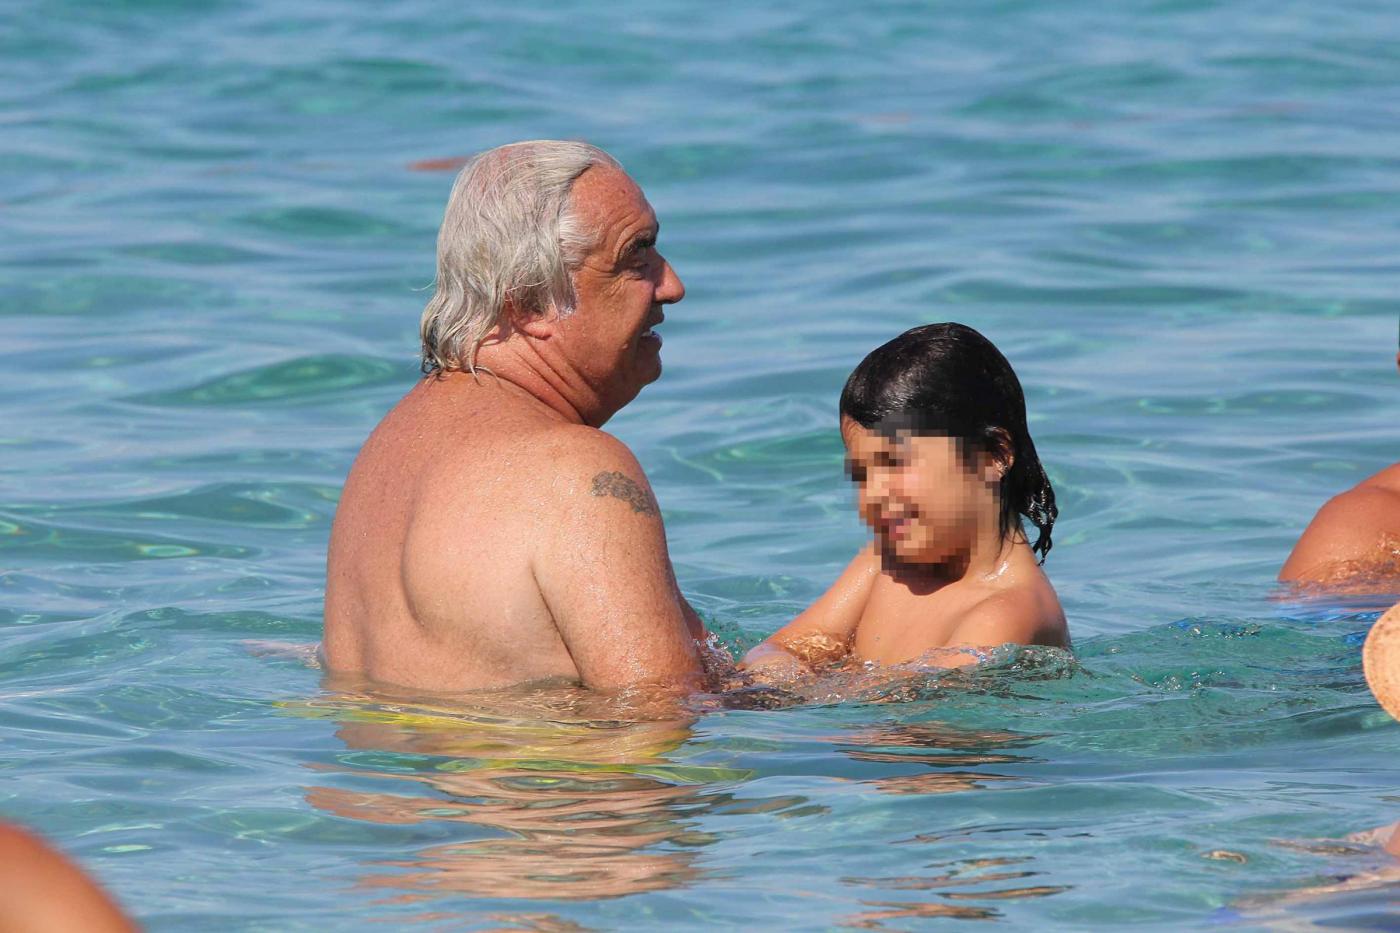 Flavio Briatore papà affettuoso: al mare in Costa Smeralda senza la Gregoraci11